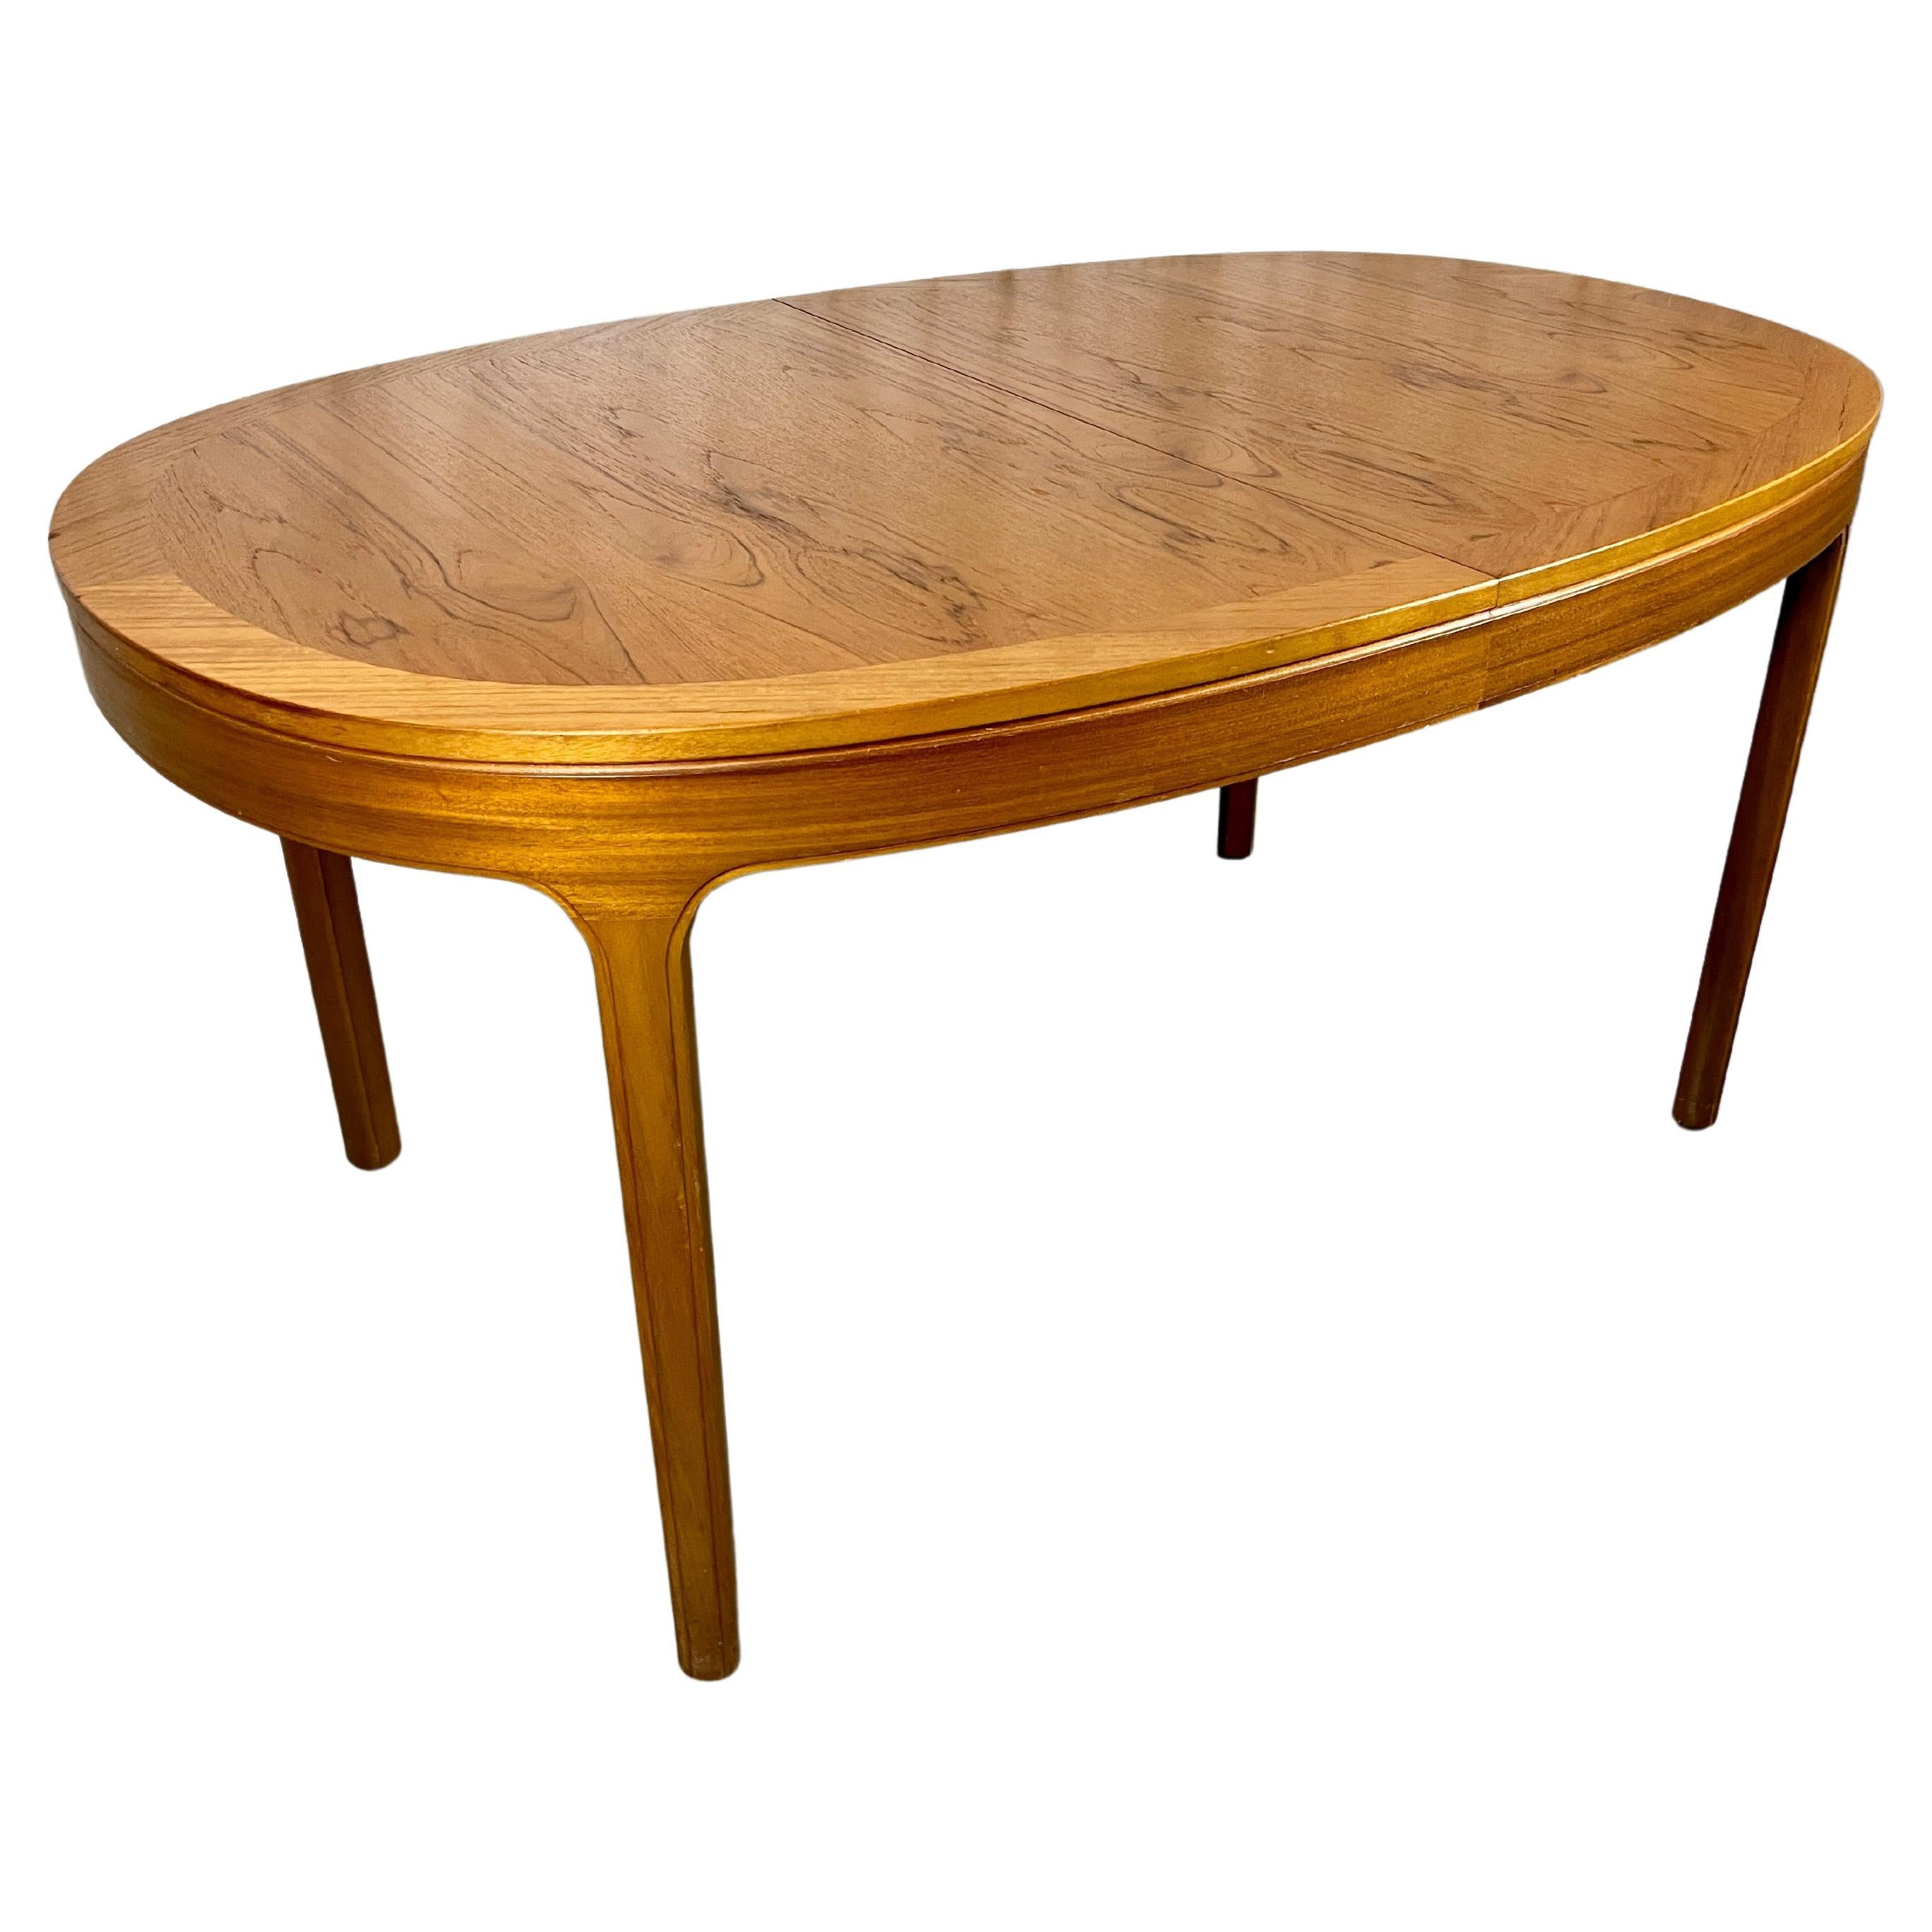 Ovaler Esstisch aus Teakholz von Nathan Furniture